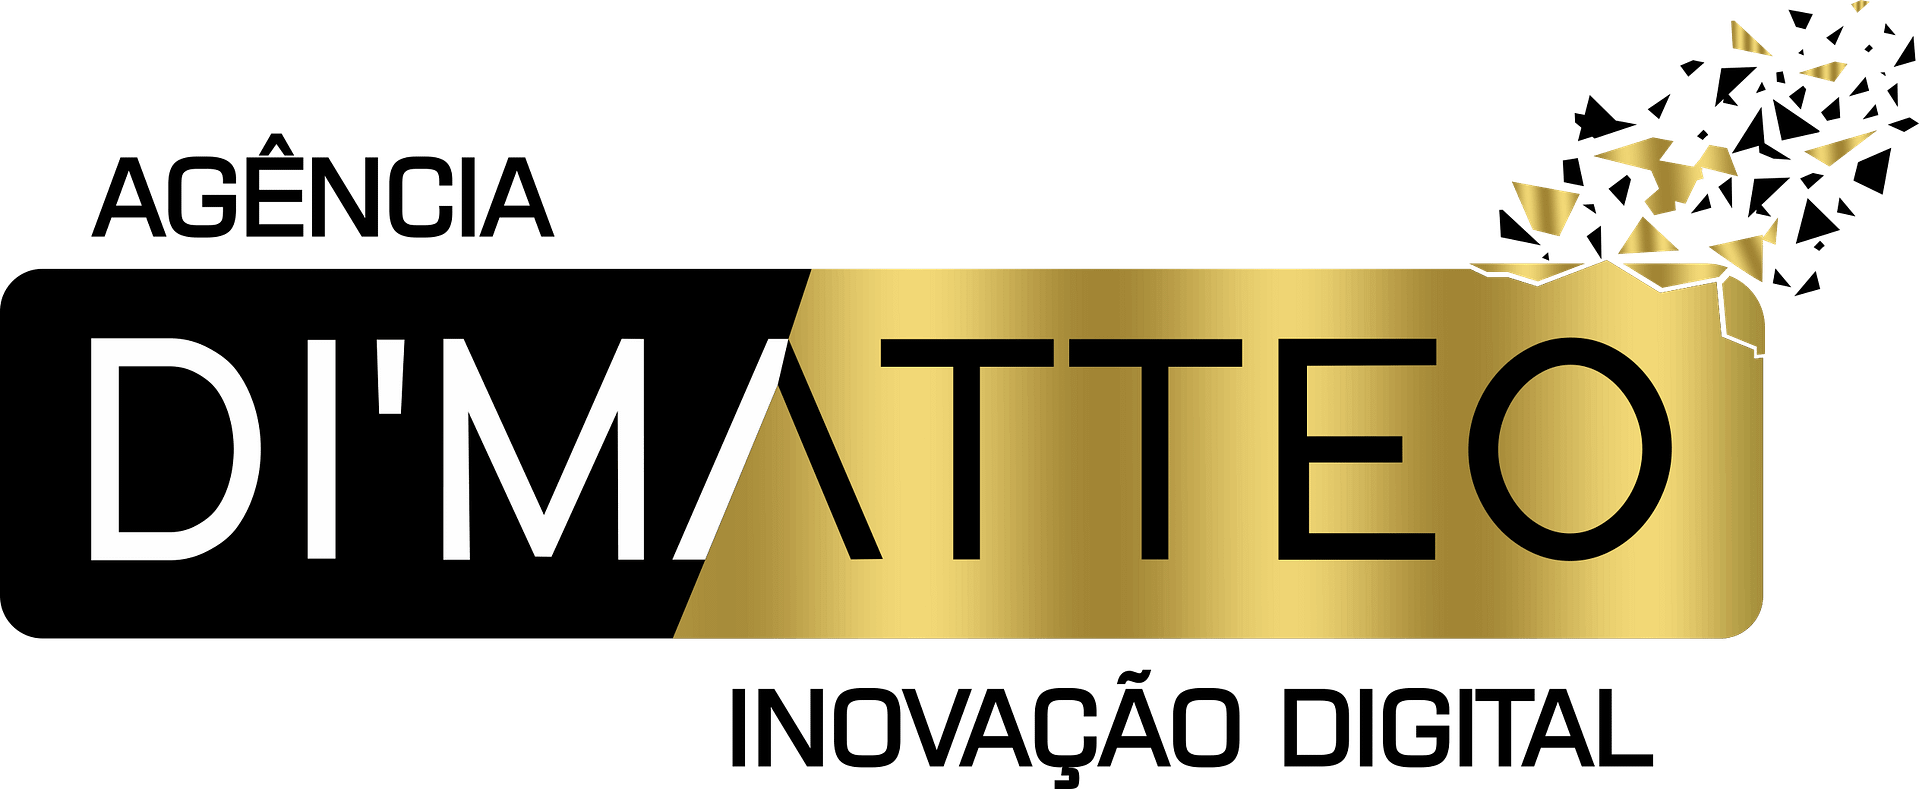 AGÊNCIA DI'MATTEO - INOVAÇÃO DIGITAL